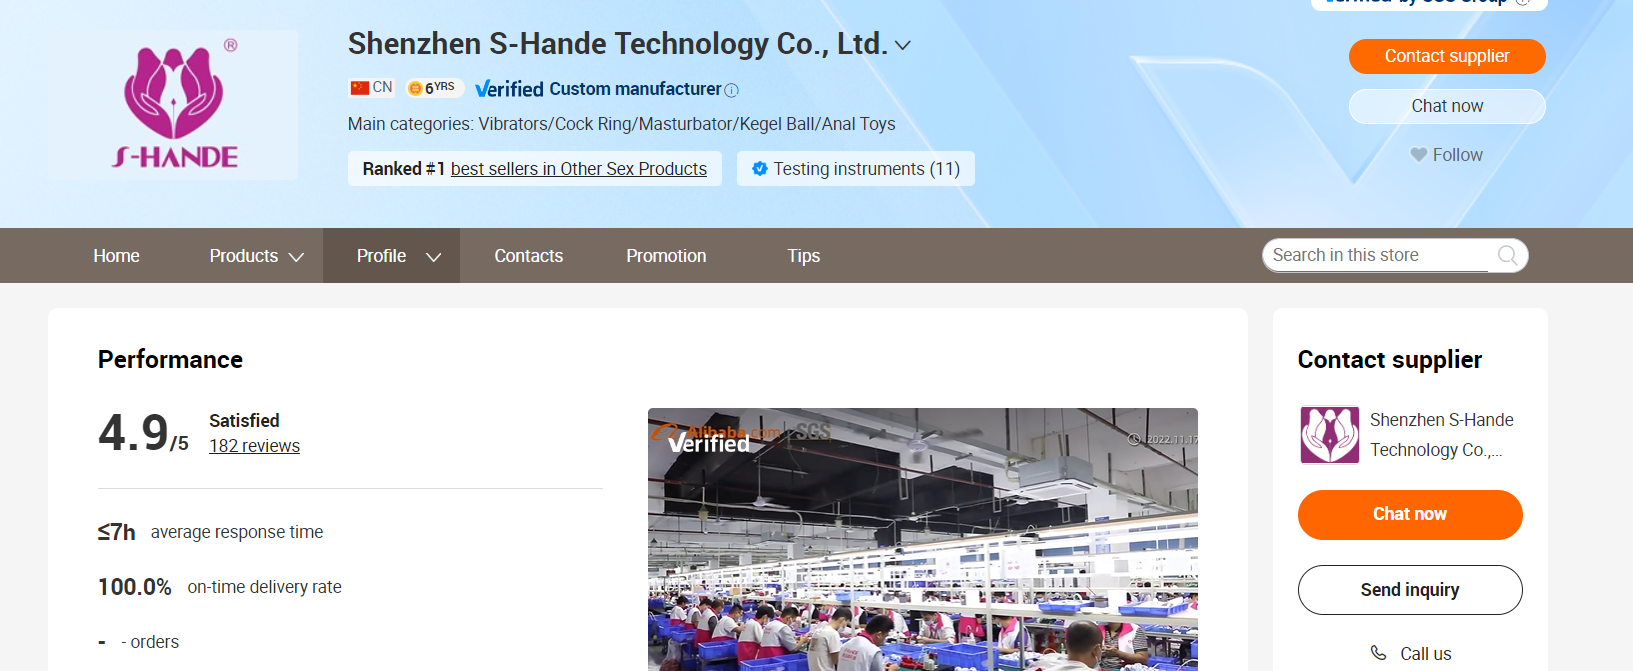 3. Shenzhen S-Hande Technology Co., Ltd.